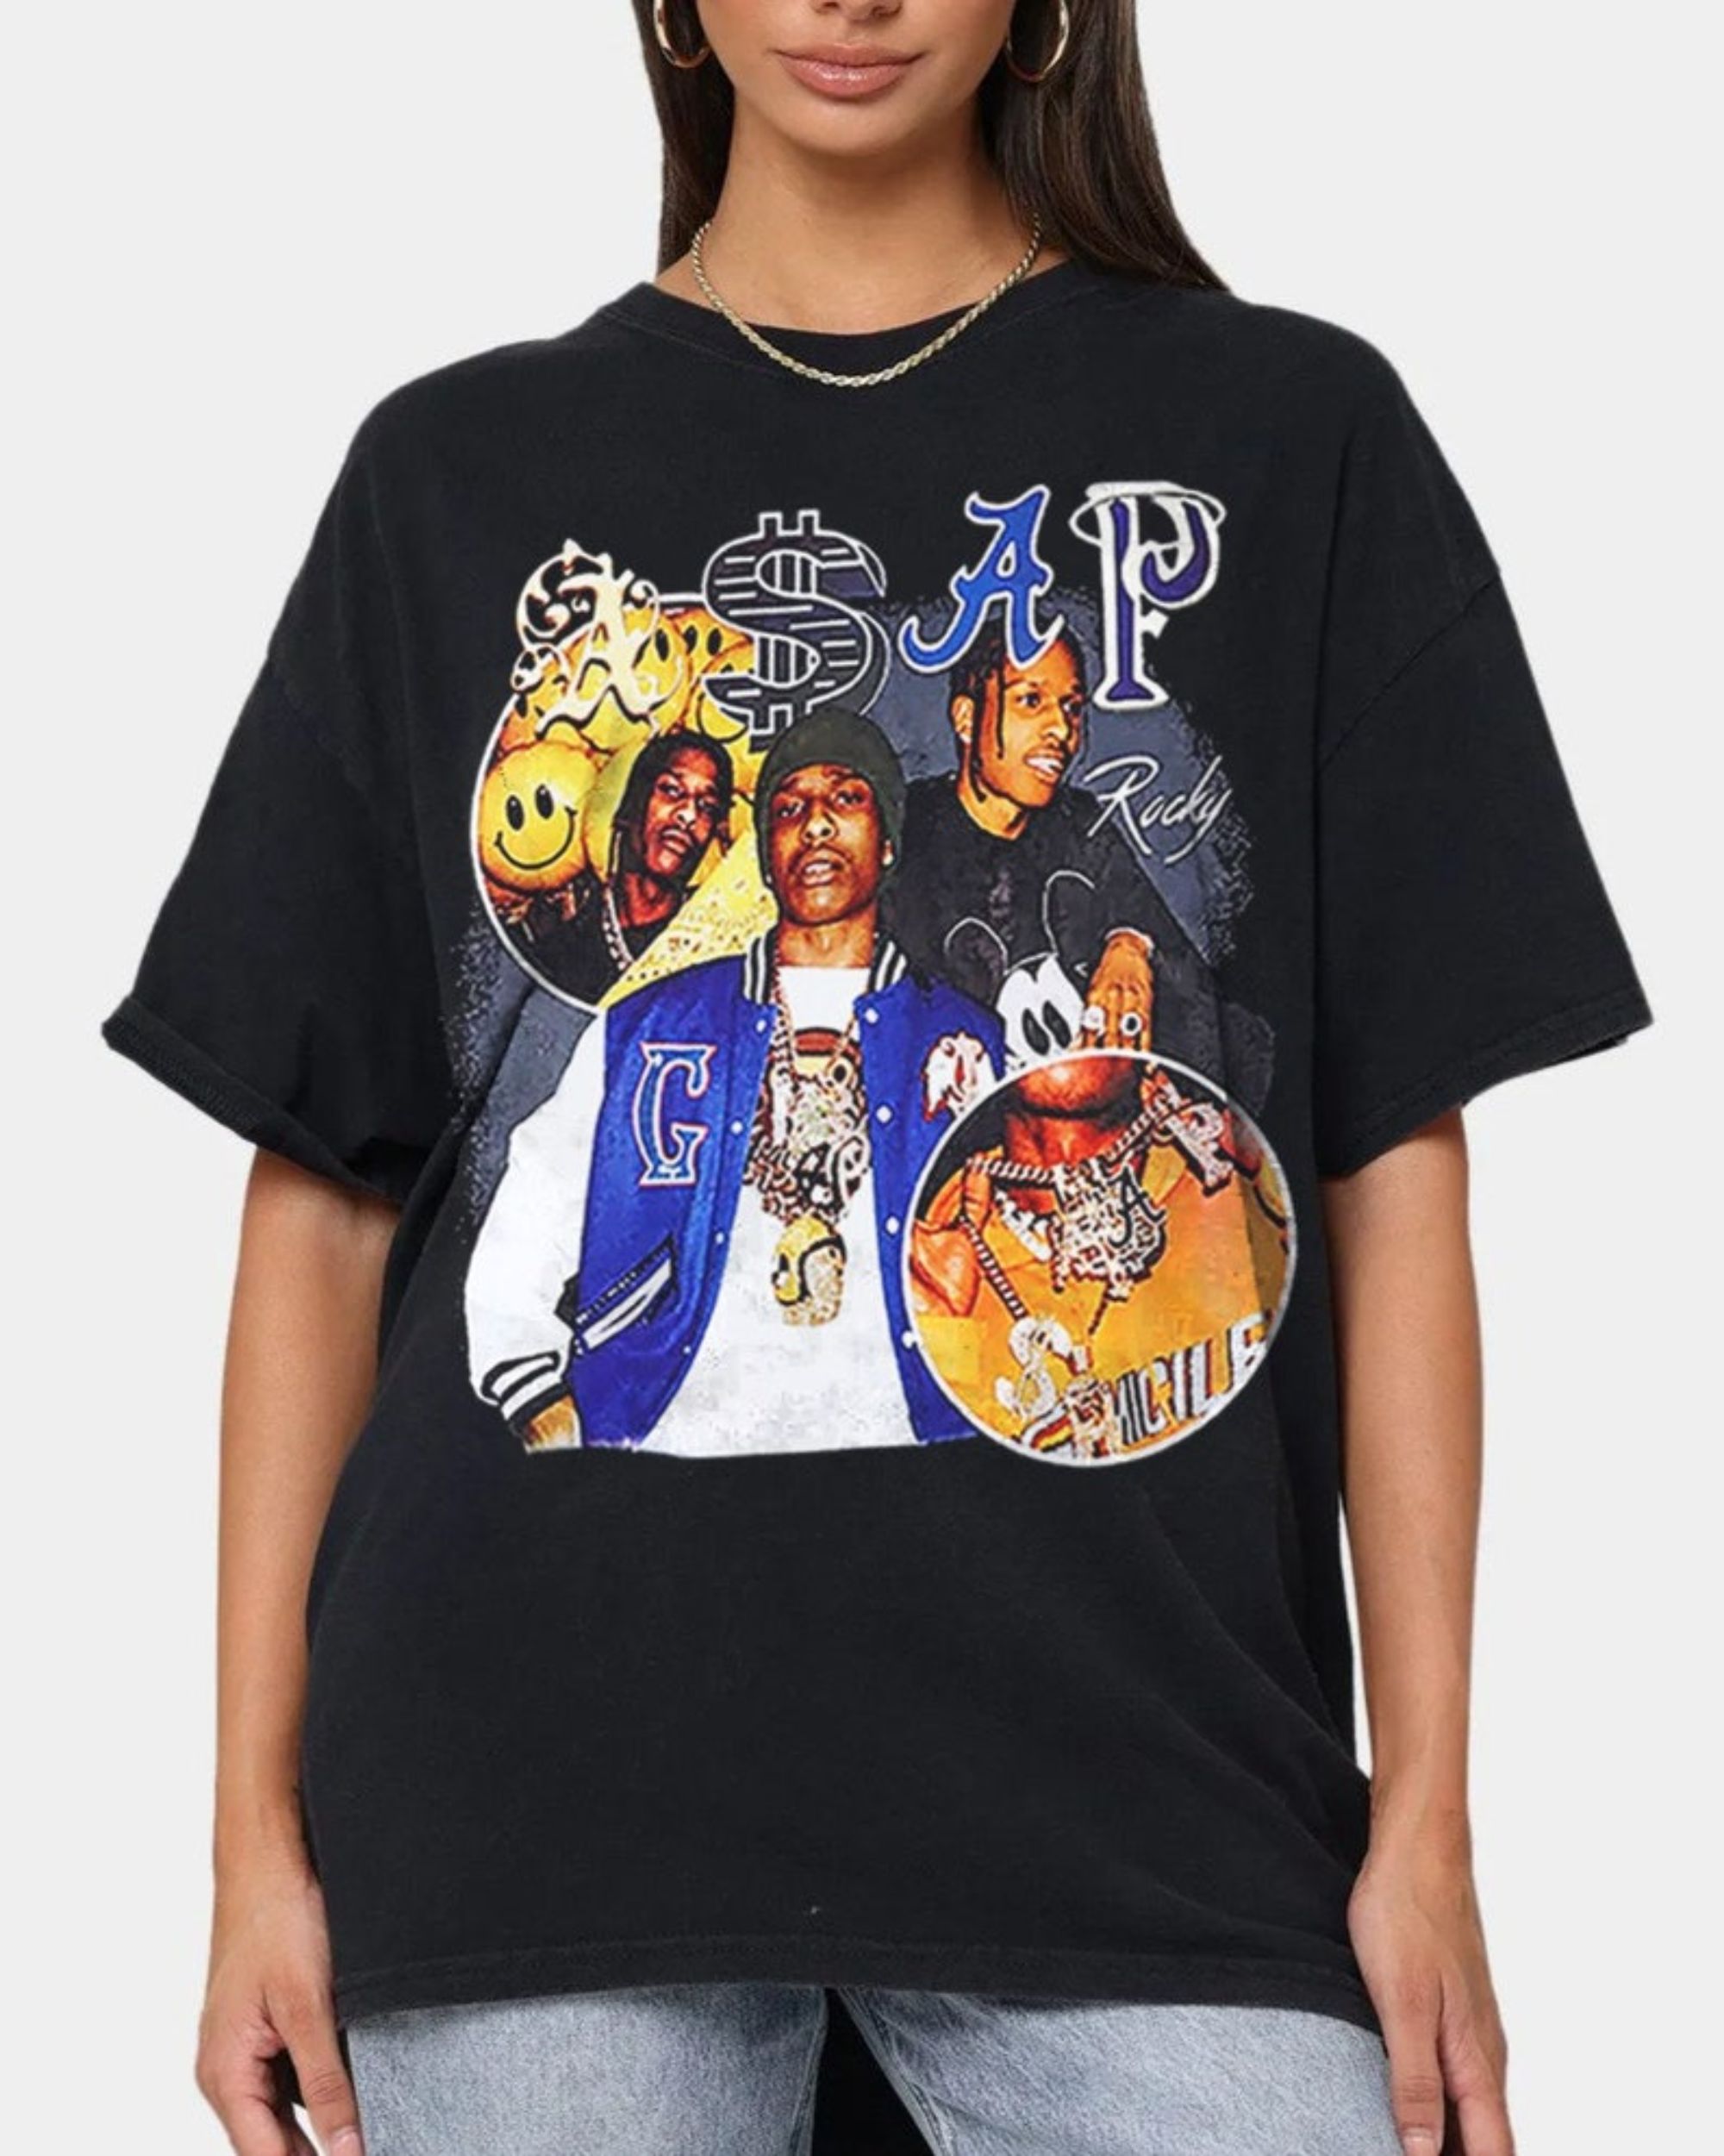 Asap Rocky T-shirt, 90s Retro Vintage Rap Tee, Hip Hop Men's Women Unisex Shirt